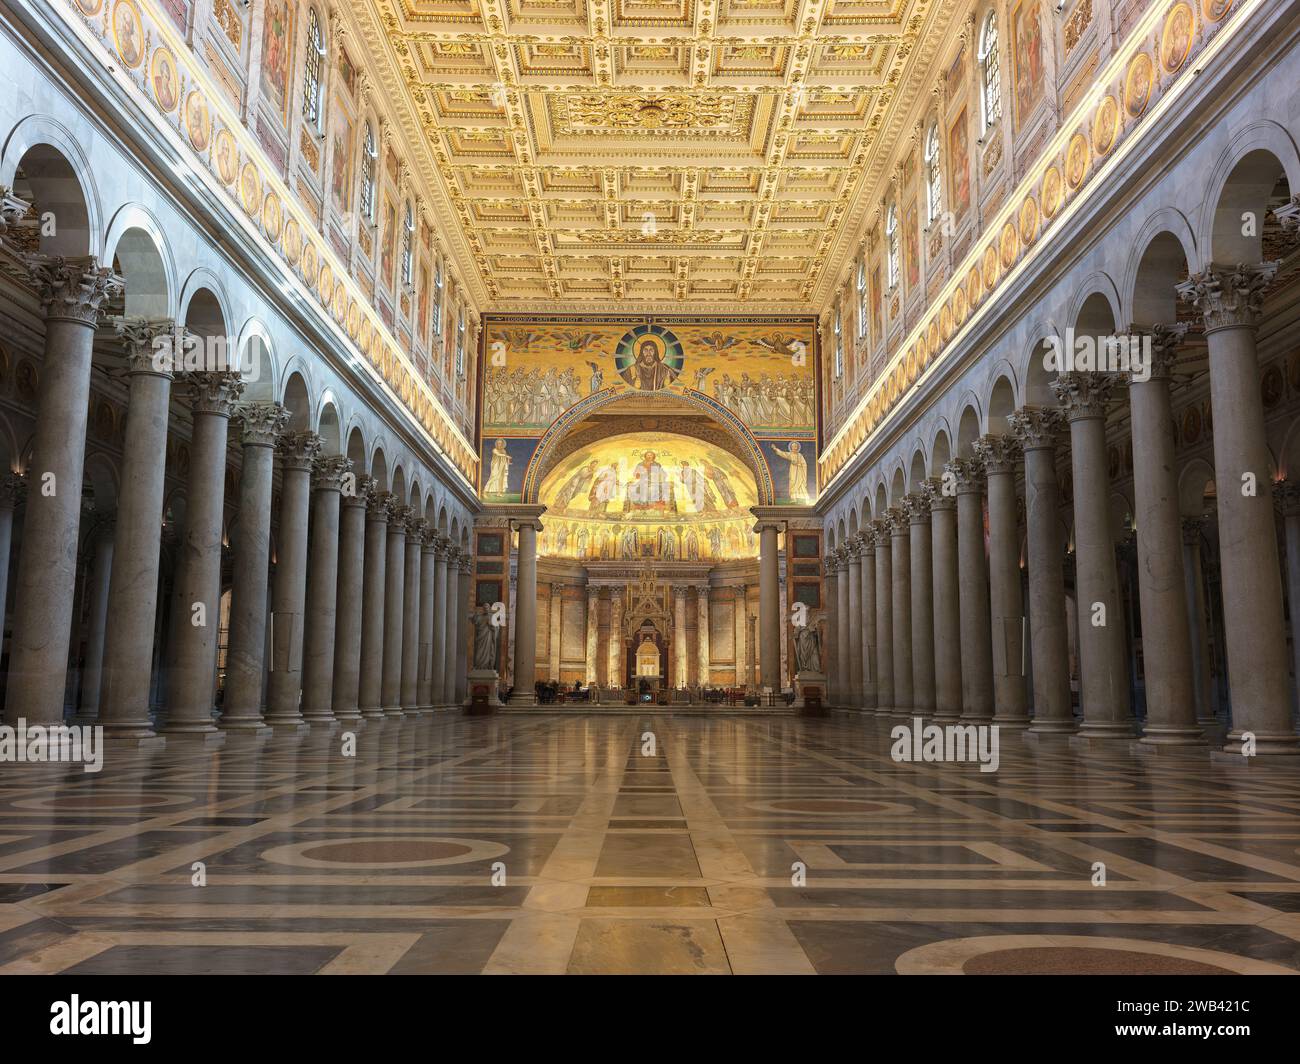 Plafond décoré au-dessus de la nef, regardant vers l'abside, de la basilique papale de Saint Paul hors les murs, Rome, Italie. Banque D'Images